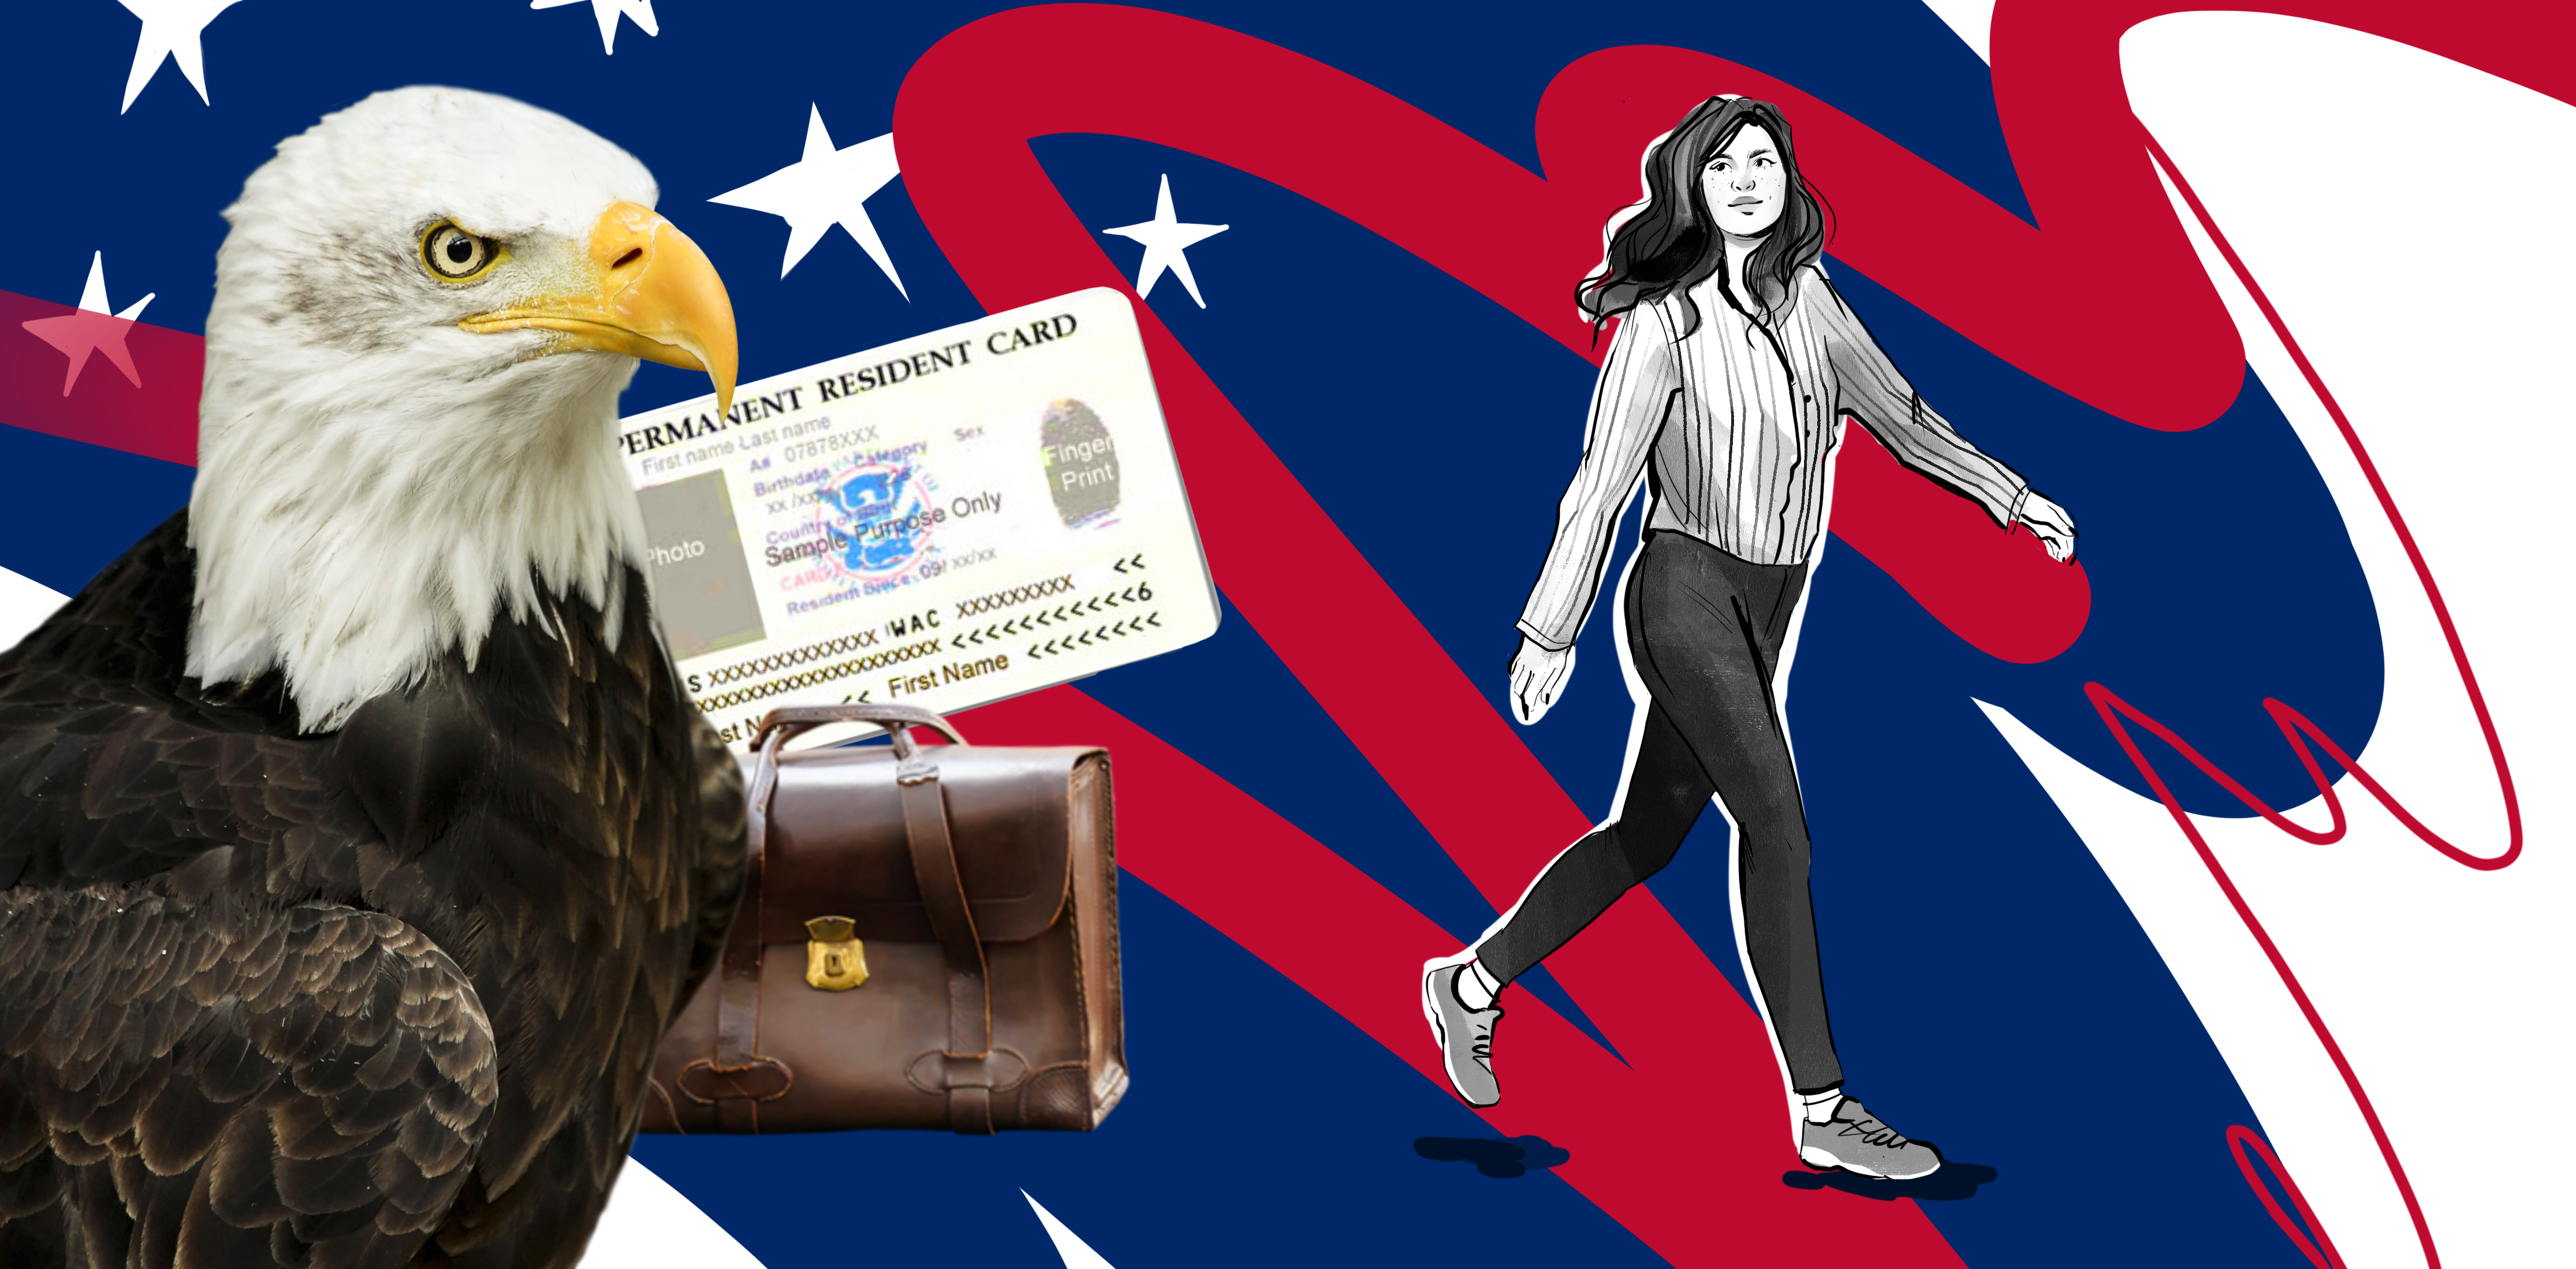 Дадут ли вам паспорт США? Тест на гражданство и розыгрыш грин-карты 